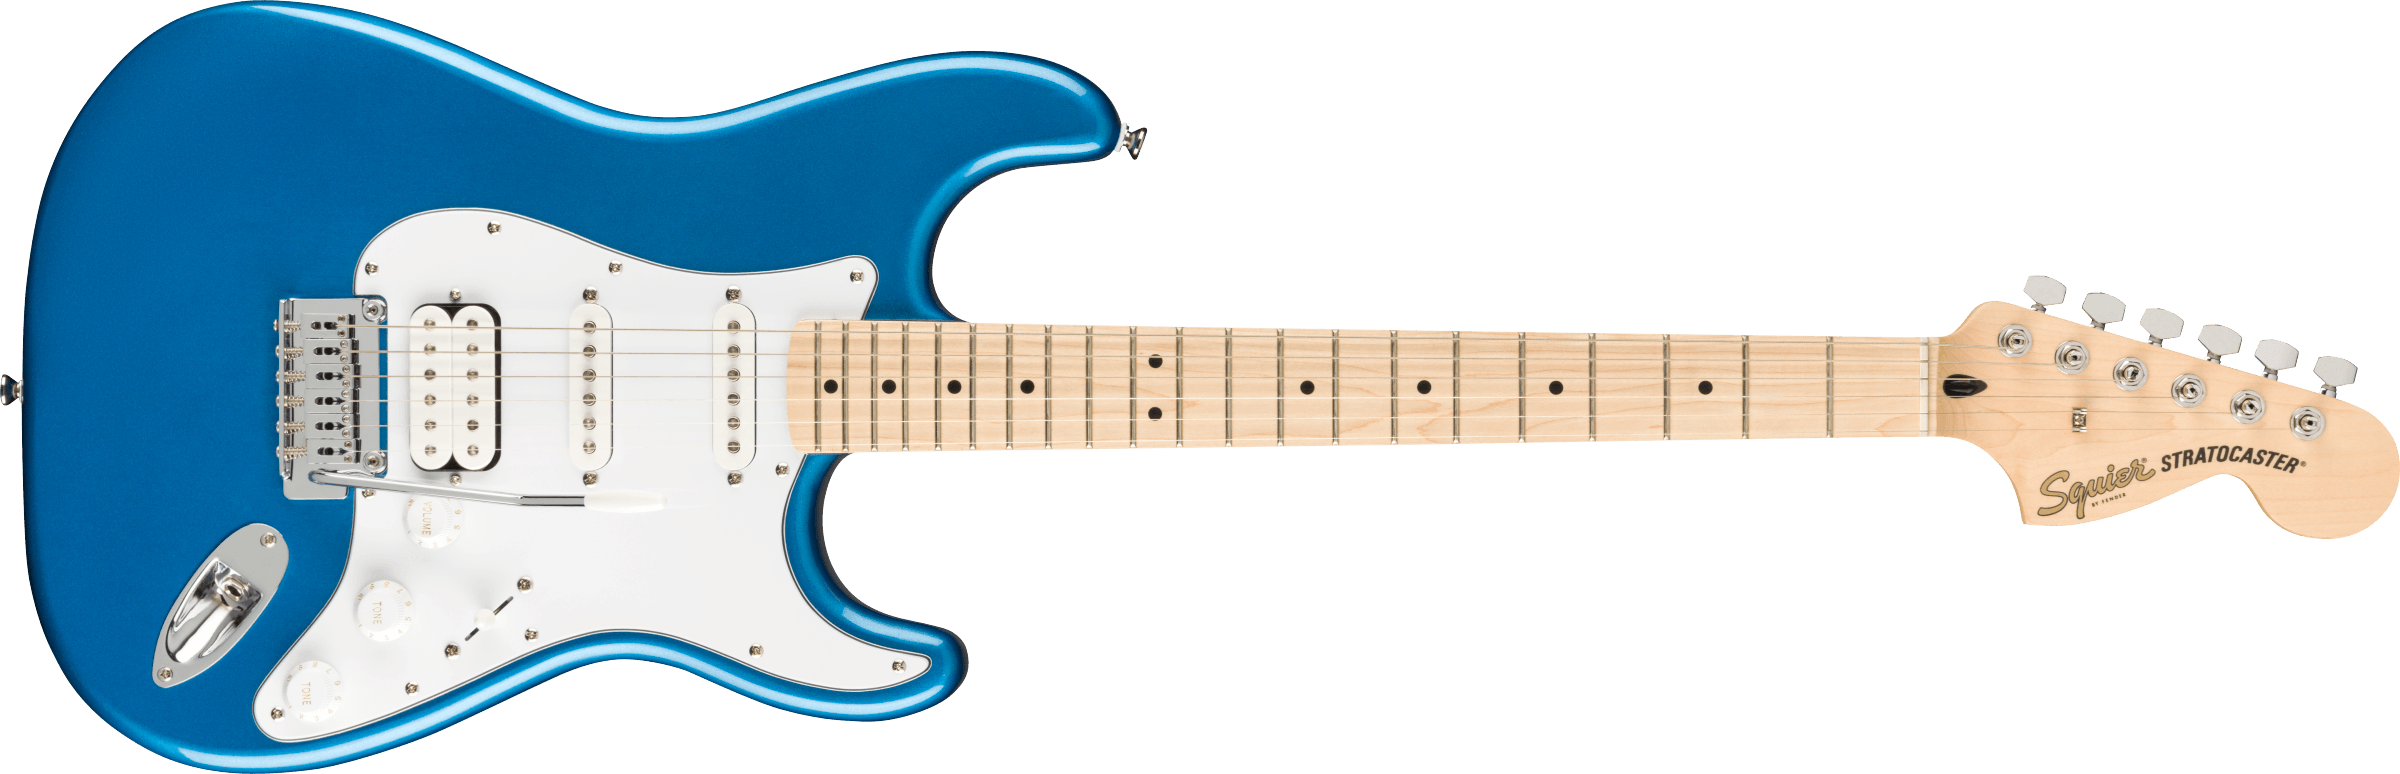 Squier Strat Affinity Hss Pack +fender Frontman 15g 2021 Trem Mn - Lake Placid Blue - Electric guitar set - Variation 1